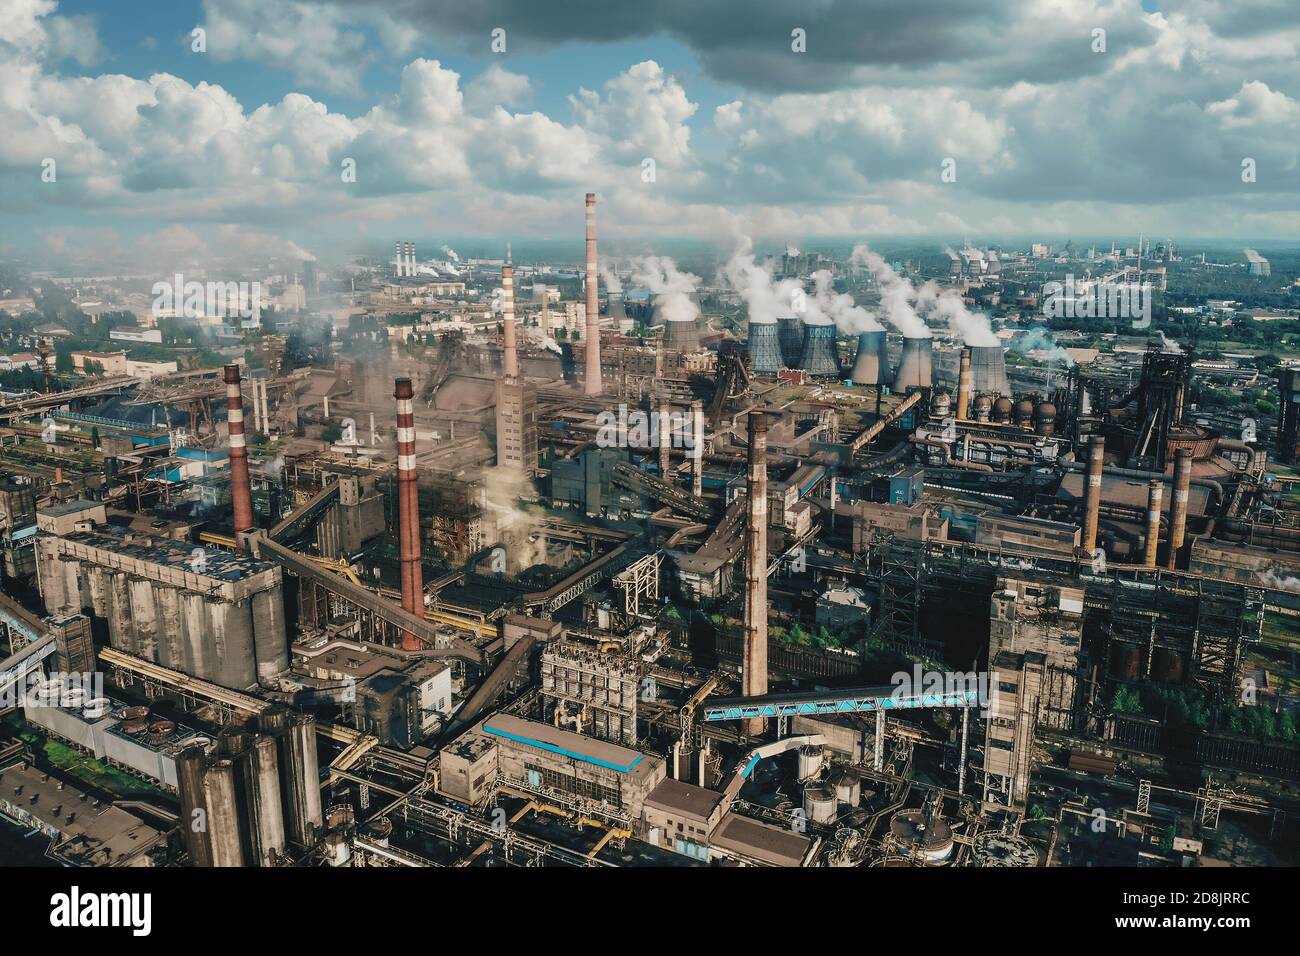 Industria petrolifera. Vista aerea della fabbrica industriale petrolchimica, dell'industria pesante, della produzione di raffinerie con inquinamento da fumo. Foto Stock